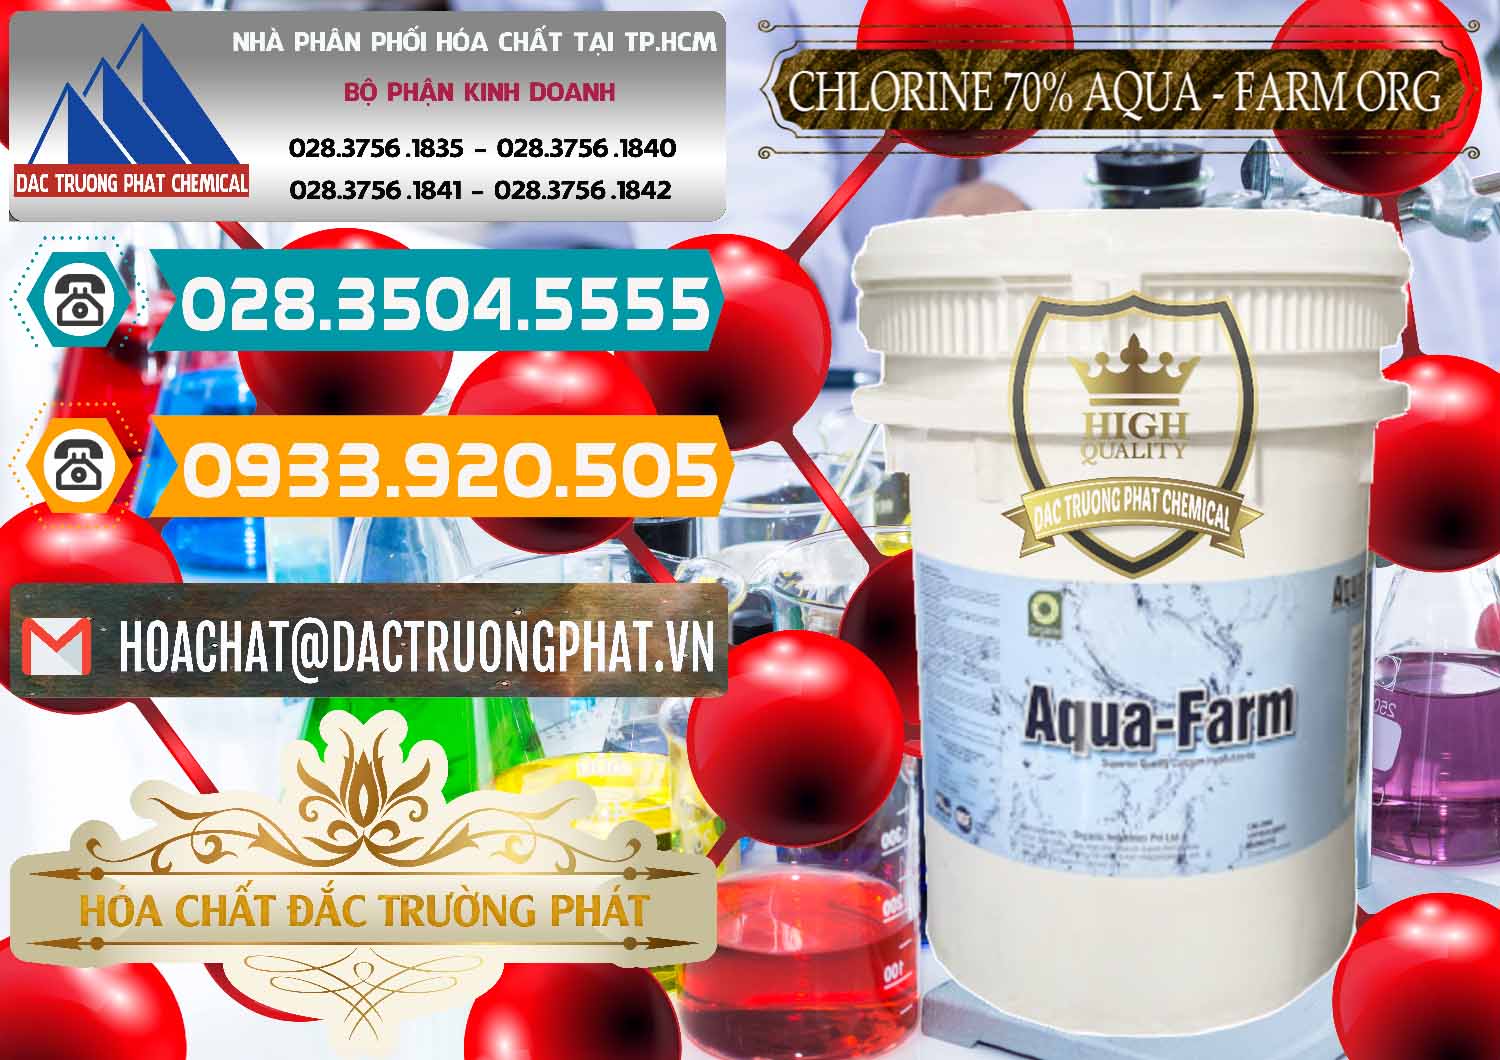 Nơi cung cấp & bán Chlorine – Clorin 70% Aqua - Farm ORG Organic Ấn Độ India - 0246 - Cty chuyên cung cấp ( bán ) hóa chất tại TP.HCM - congtyhoachat.vn